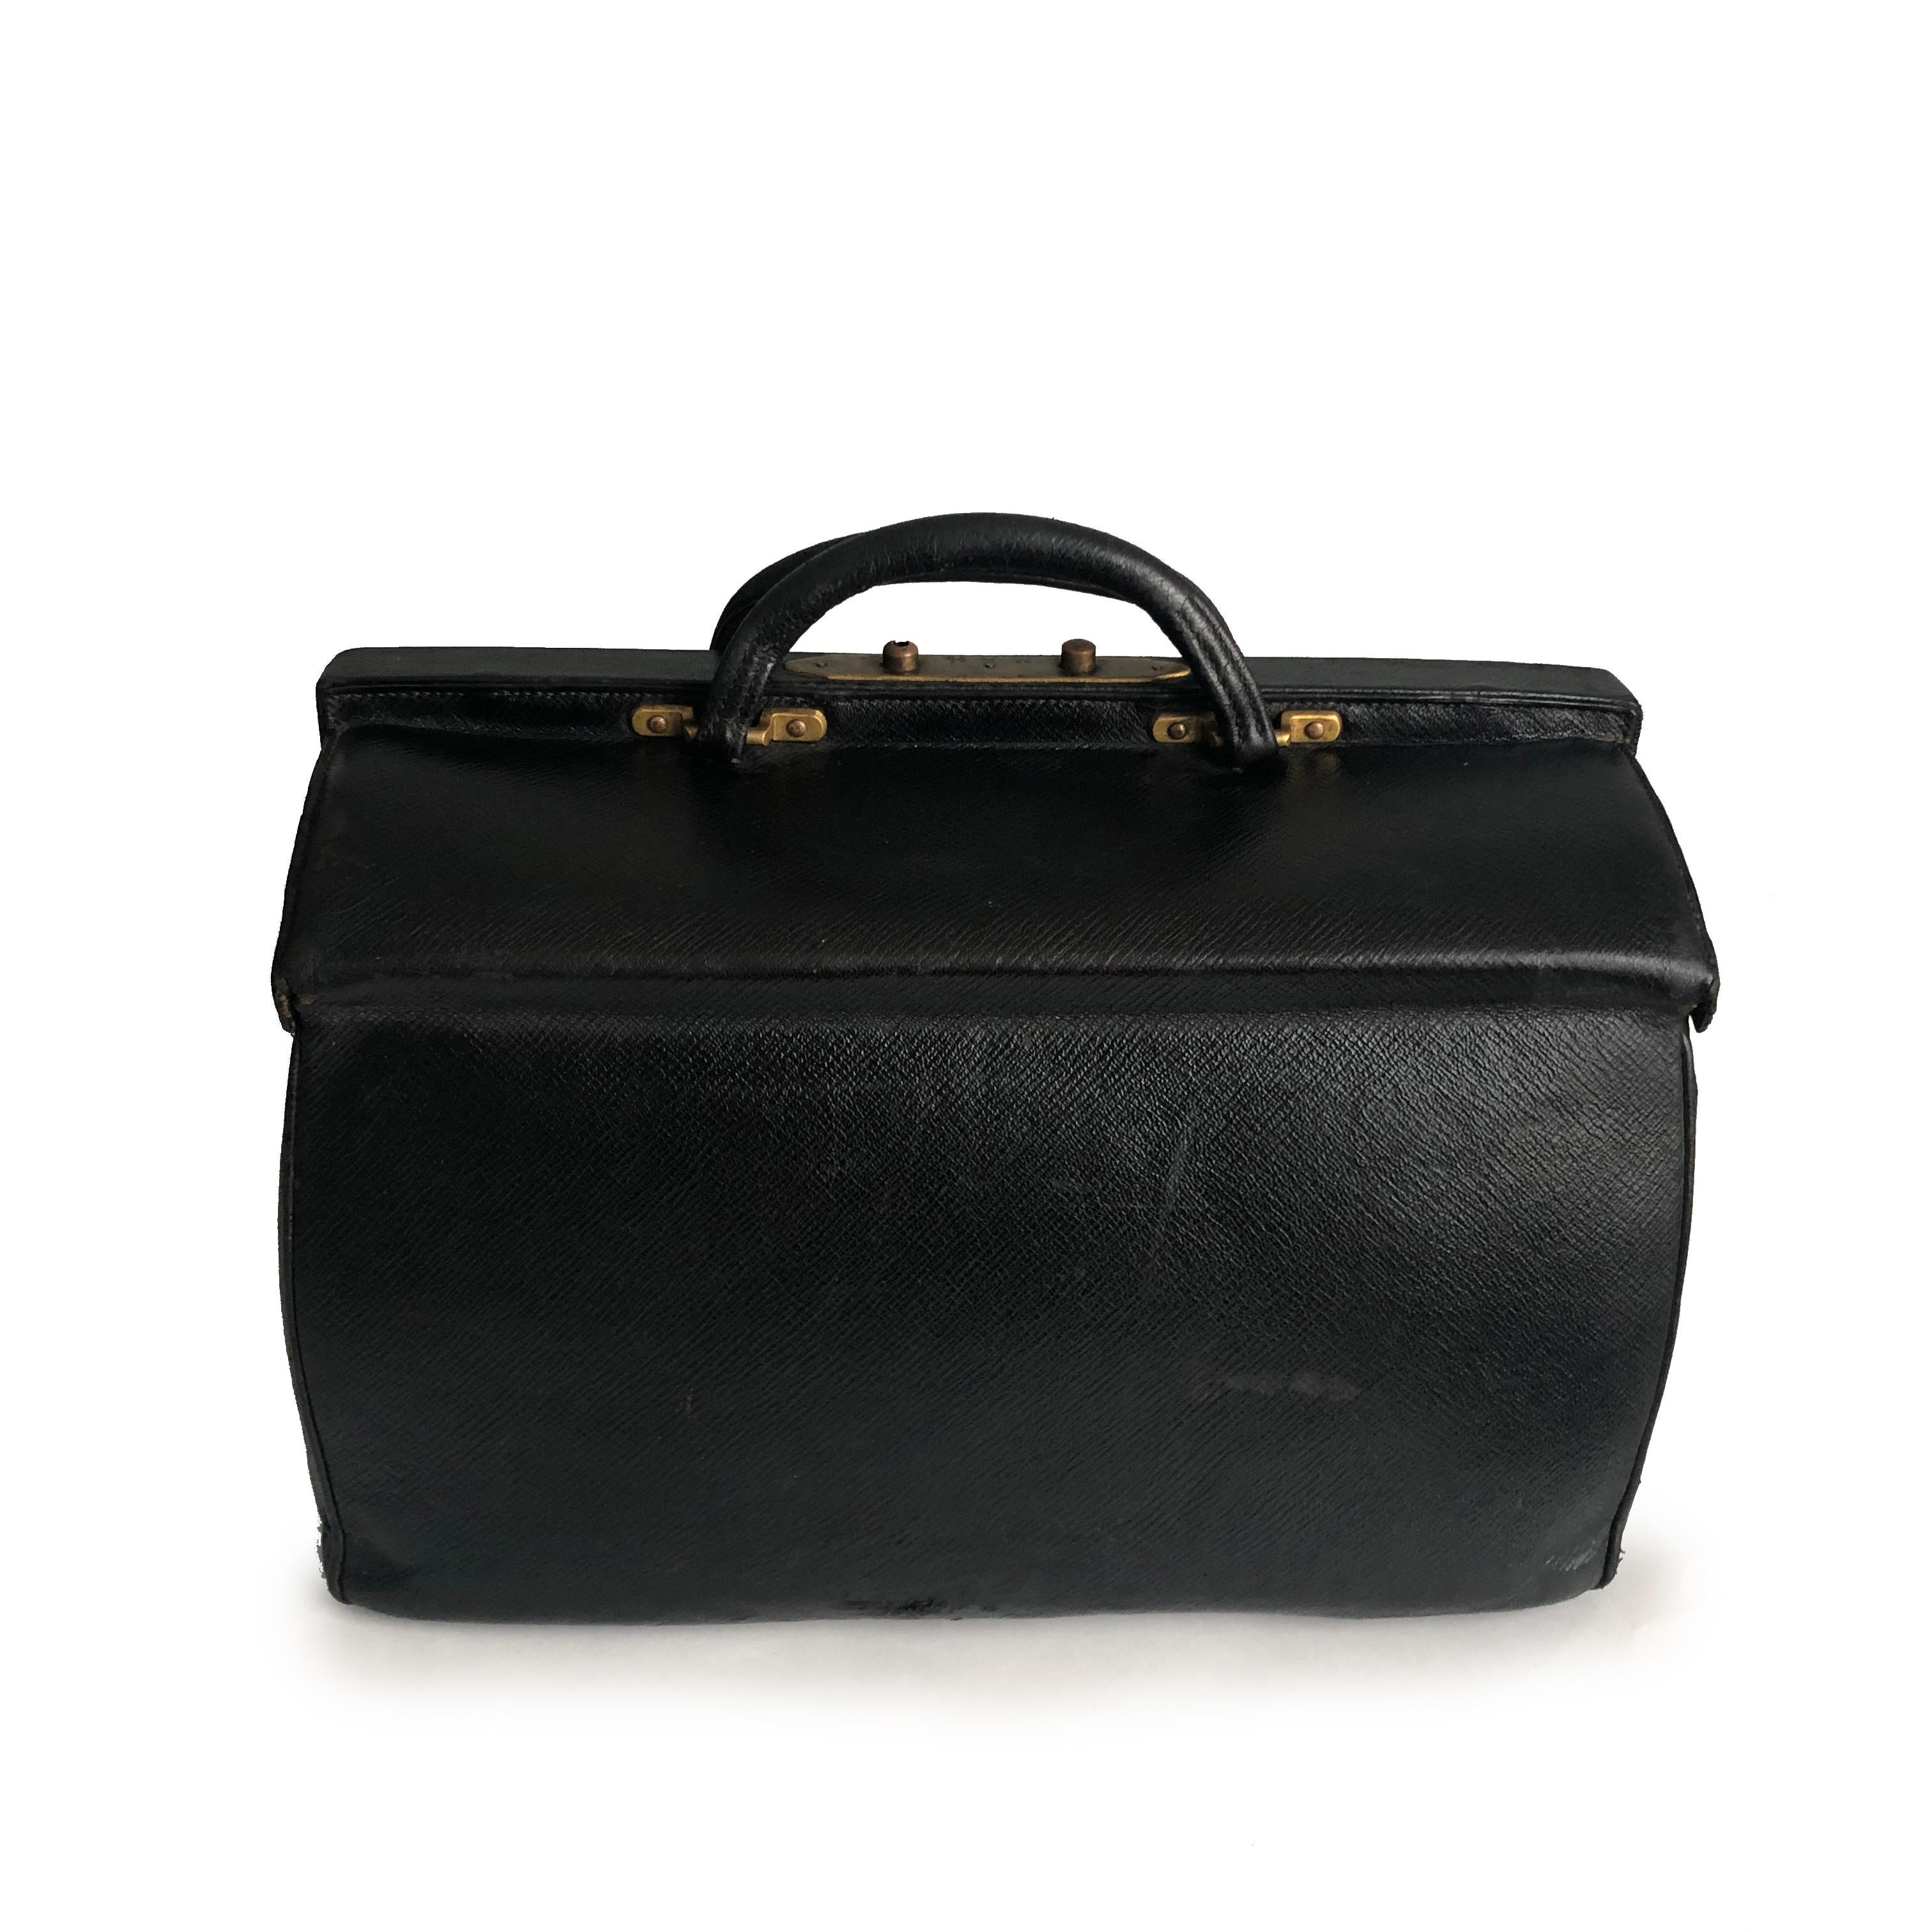 Antike Louis Vuitton Sac Cabine Black Doctors Bag, wahrscheinlich aus dem frühen 20. Jahrhundert.  Sie ist aus schwarzem, genarbtem Leder gefertigt und lässt sich wie eine Arzttasche mit zwei Scharnieren öffnen und verfügt über doppelte obere